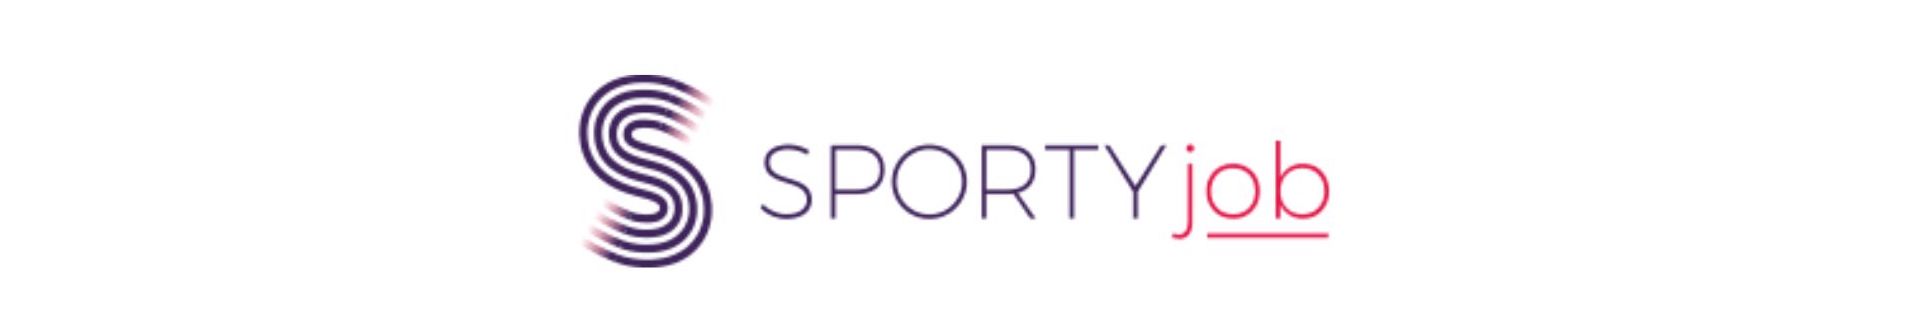 Sportyjob Logo